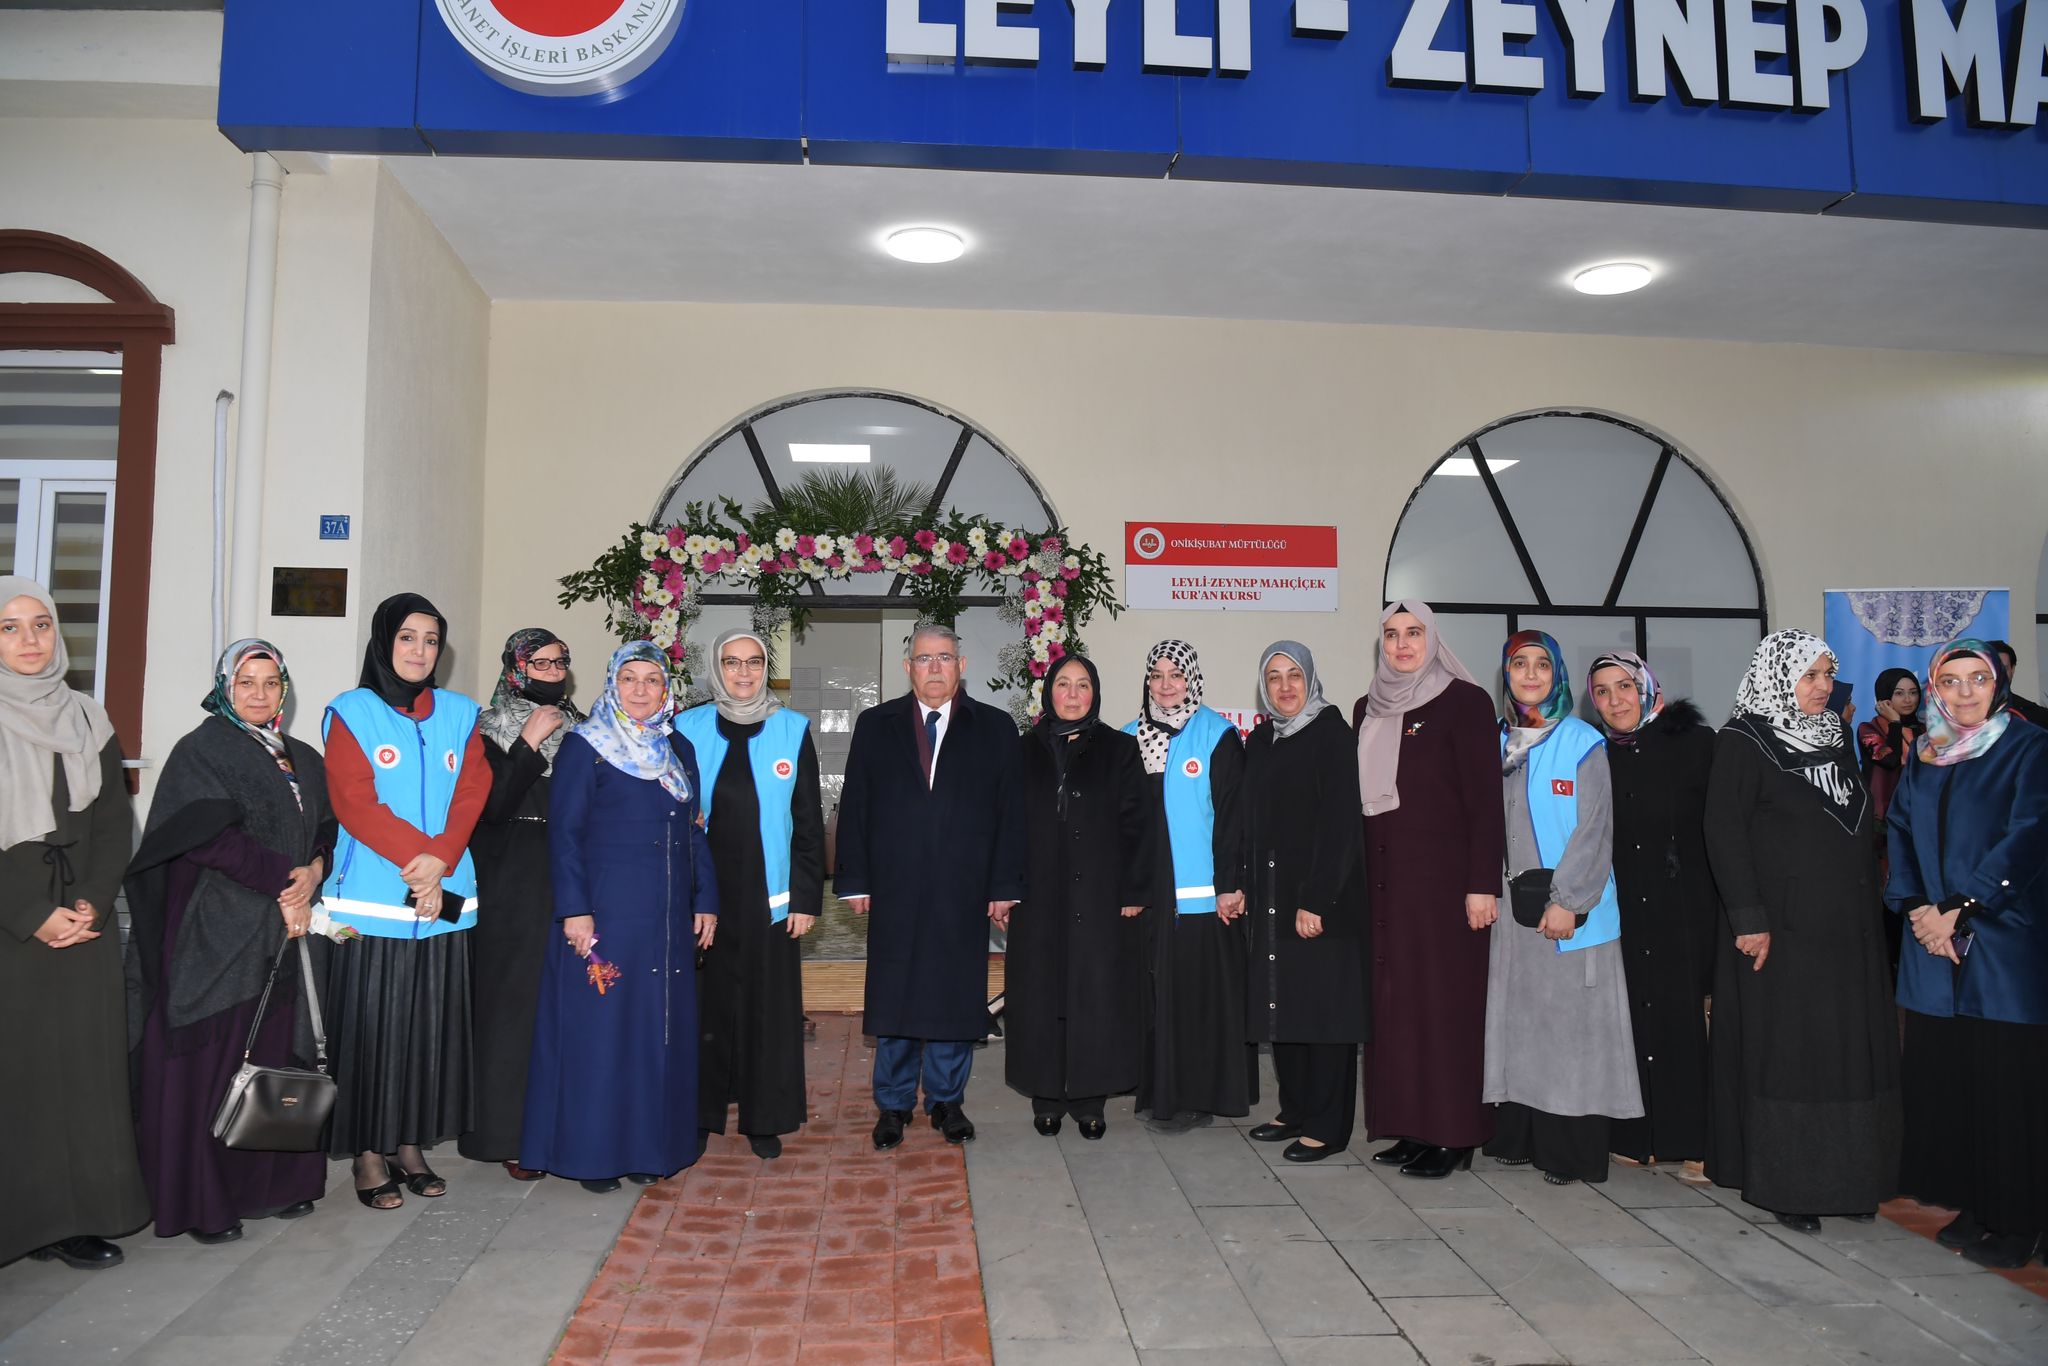 <strong>Leyli-Zeynep Mahçiçek Kur’an Eğitim Merkezi dualarla hizmete açıldı</strong>